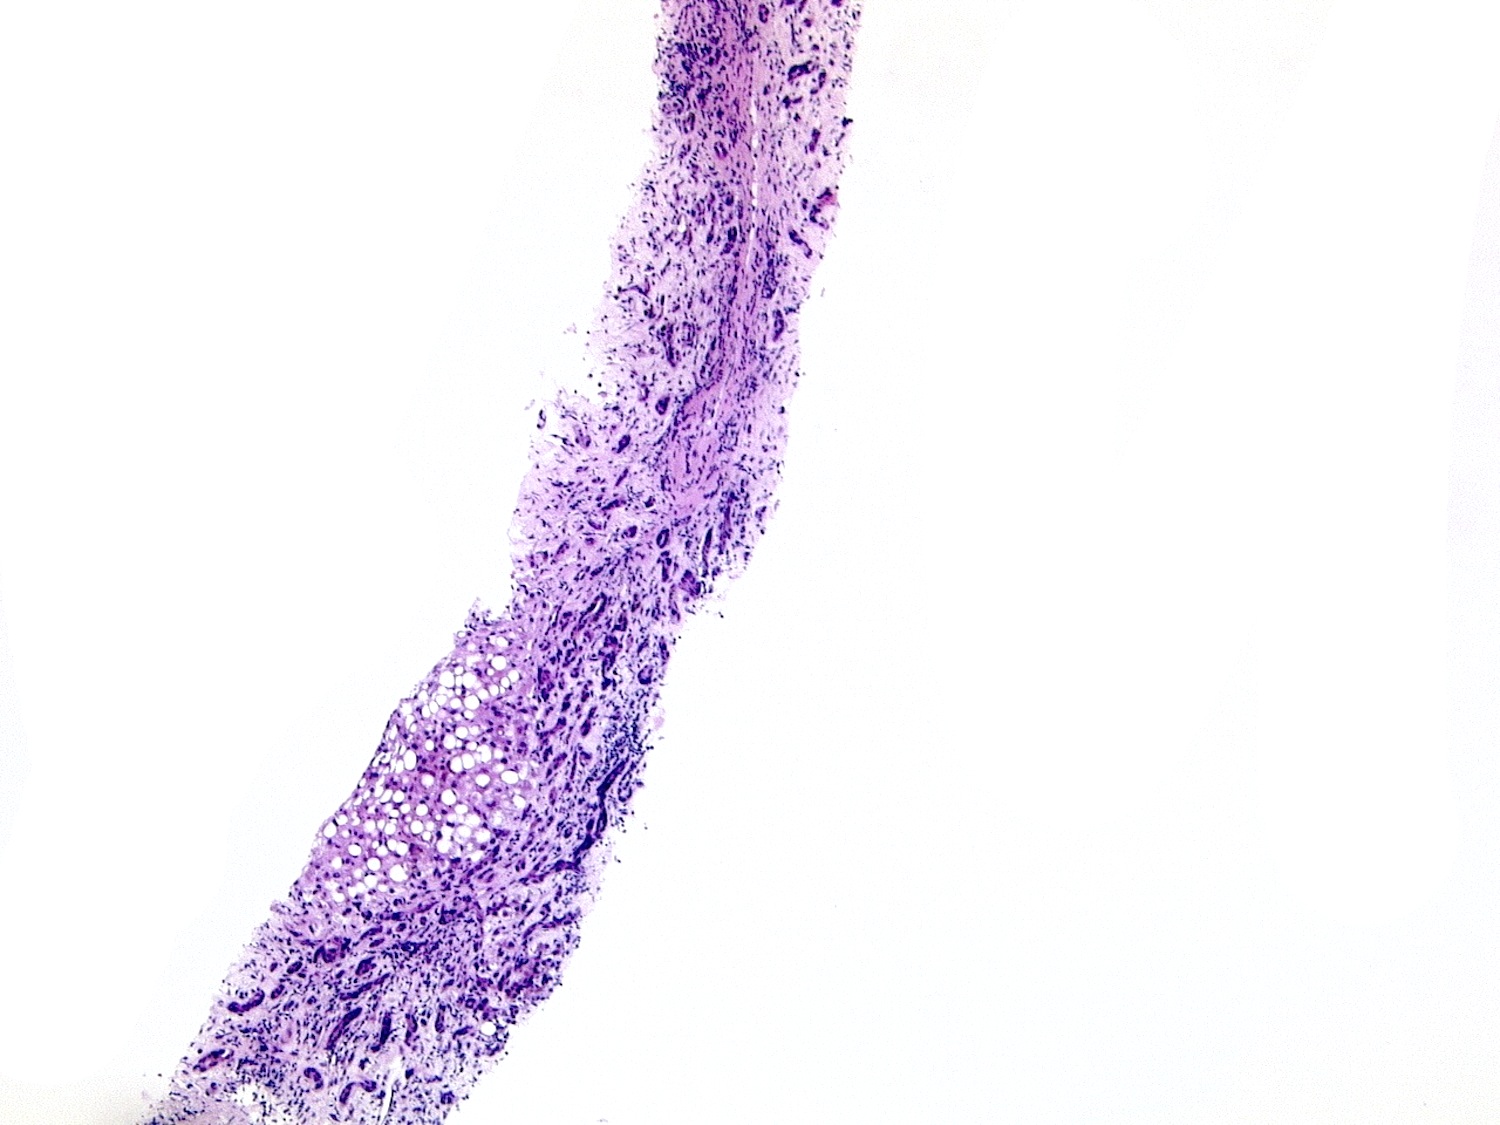 Micronodular cirrhosis